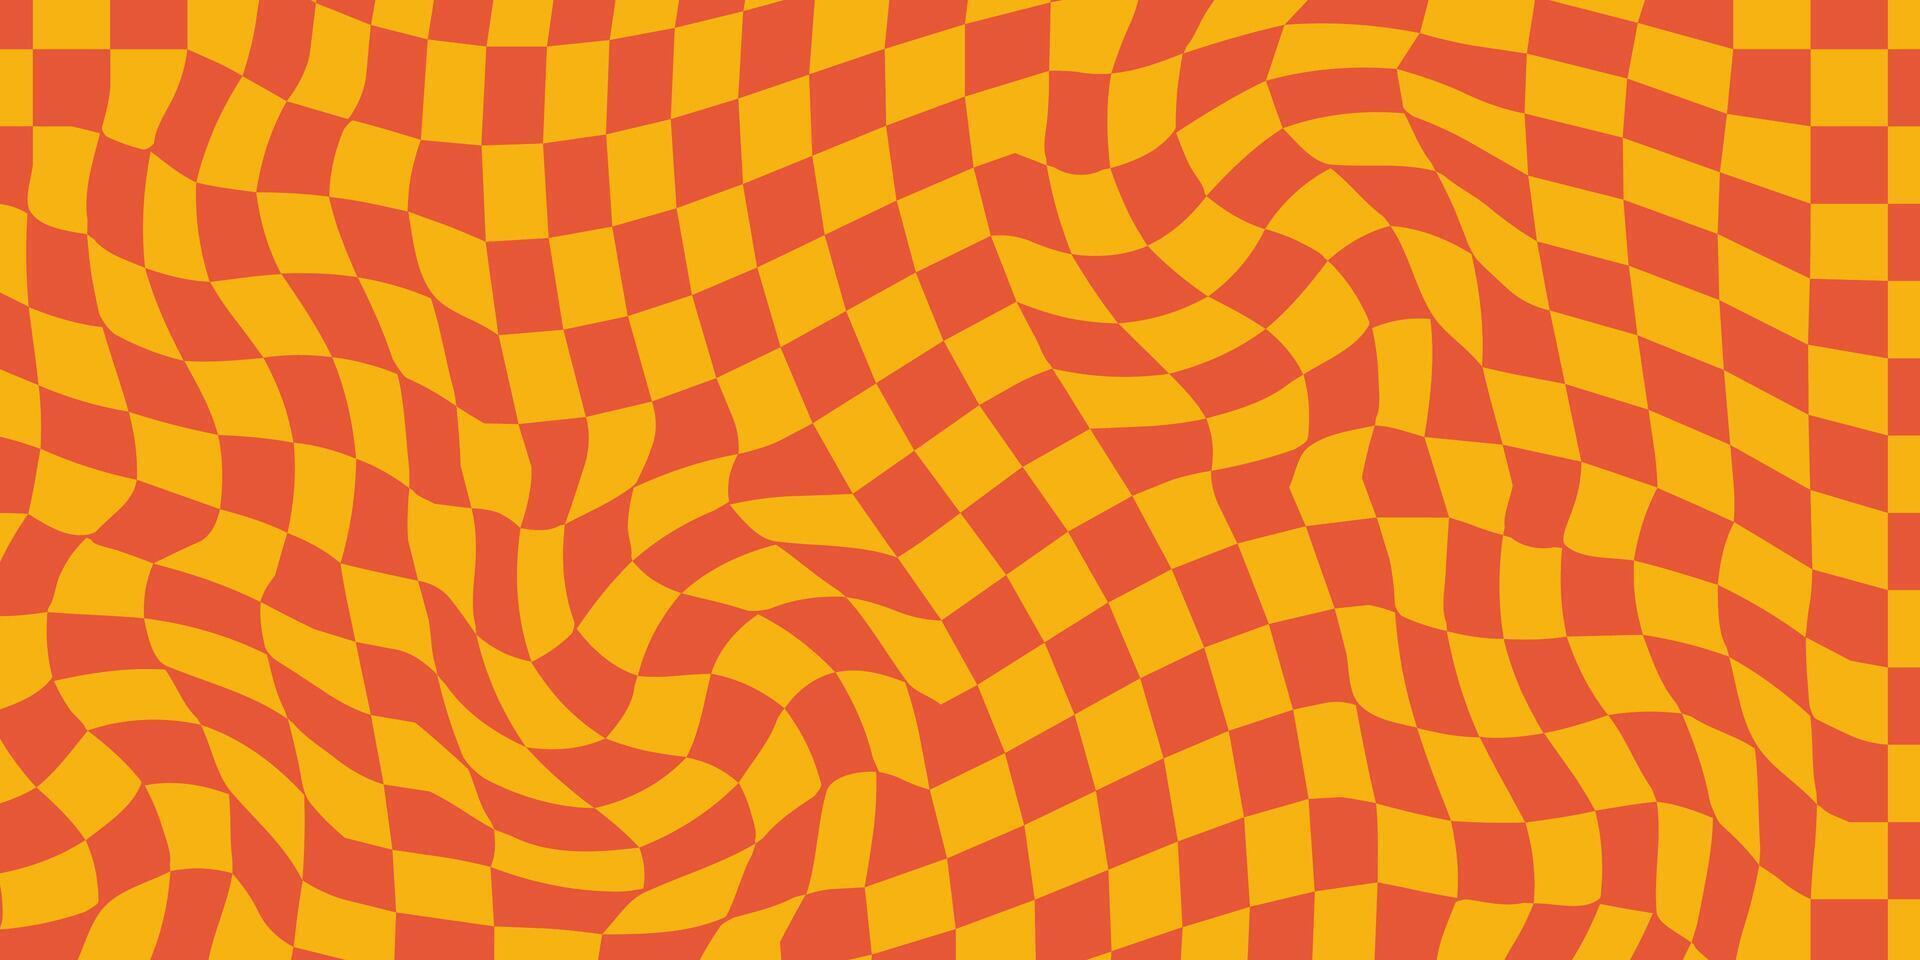 groovig Schachbrett Wellen Muster. verdrehte und verzerrt Vektor Texturen bringen ein modisch retro psychedelisch Stil. perfekt zum y2k ästhetisch im Orangen Farbe Paletten